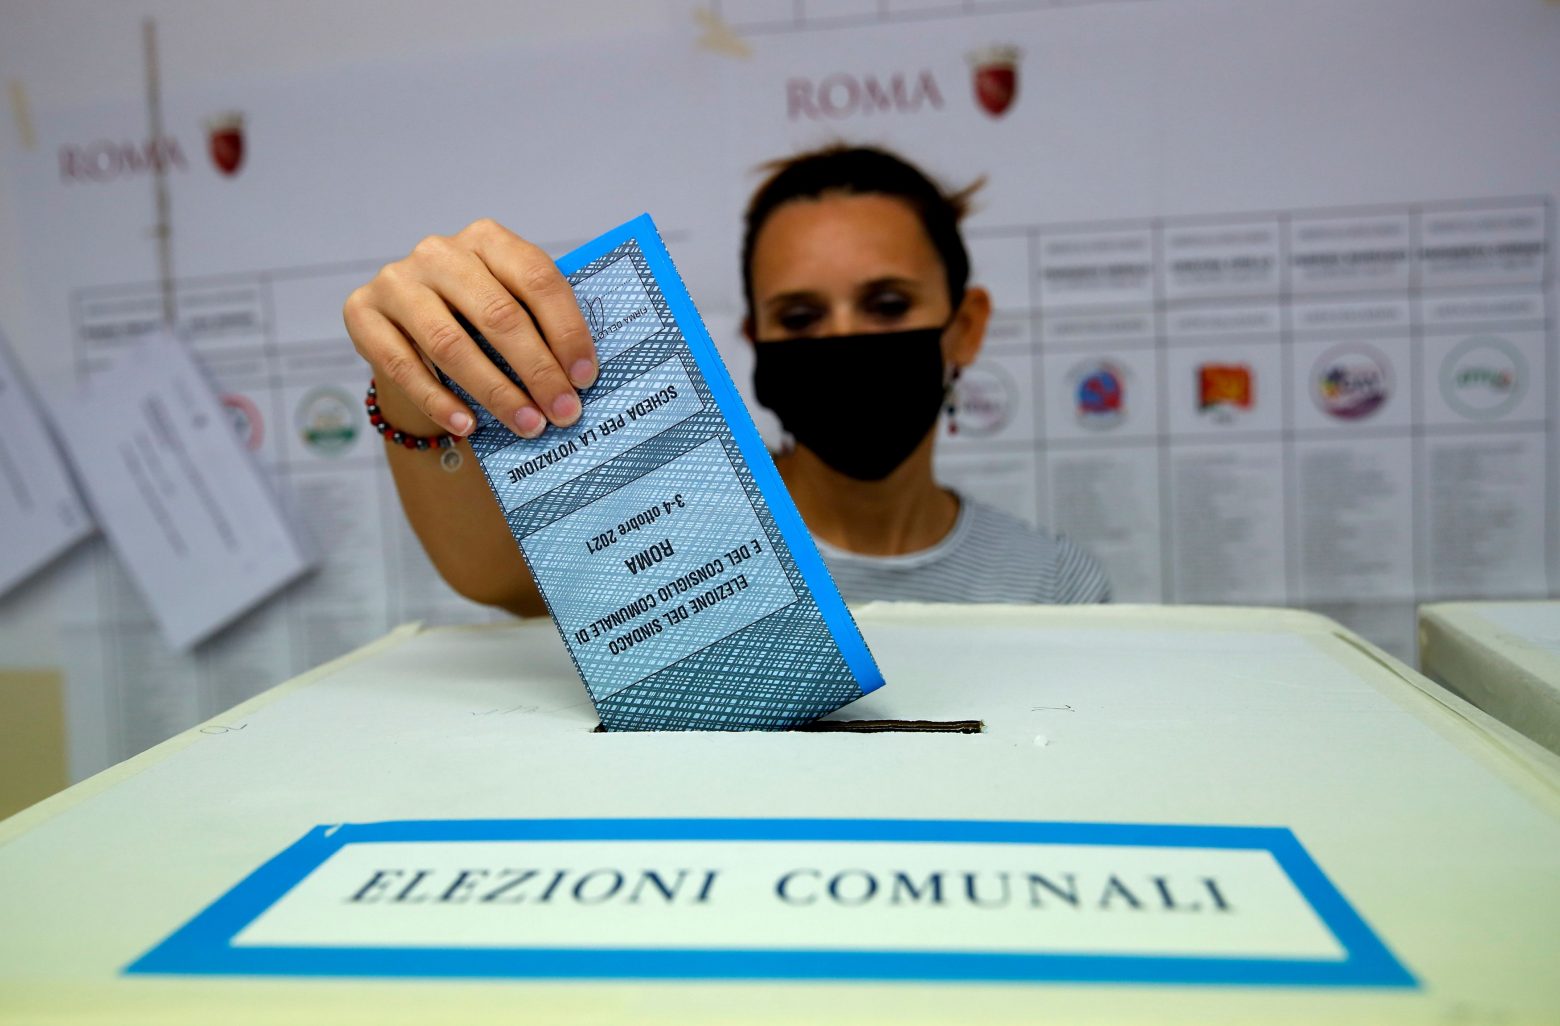 Ιταλία: Νίκη της κεντροδεξιάς στις δημοτικές εκλογές δείχνουν τα exit poll - Αποτυχία για τα δημοψηφίσματα